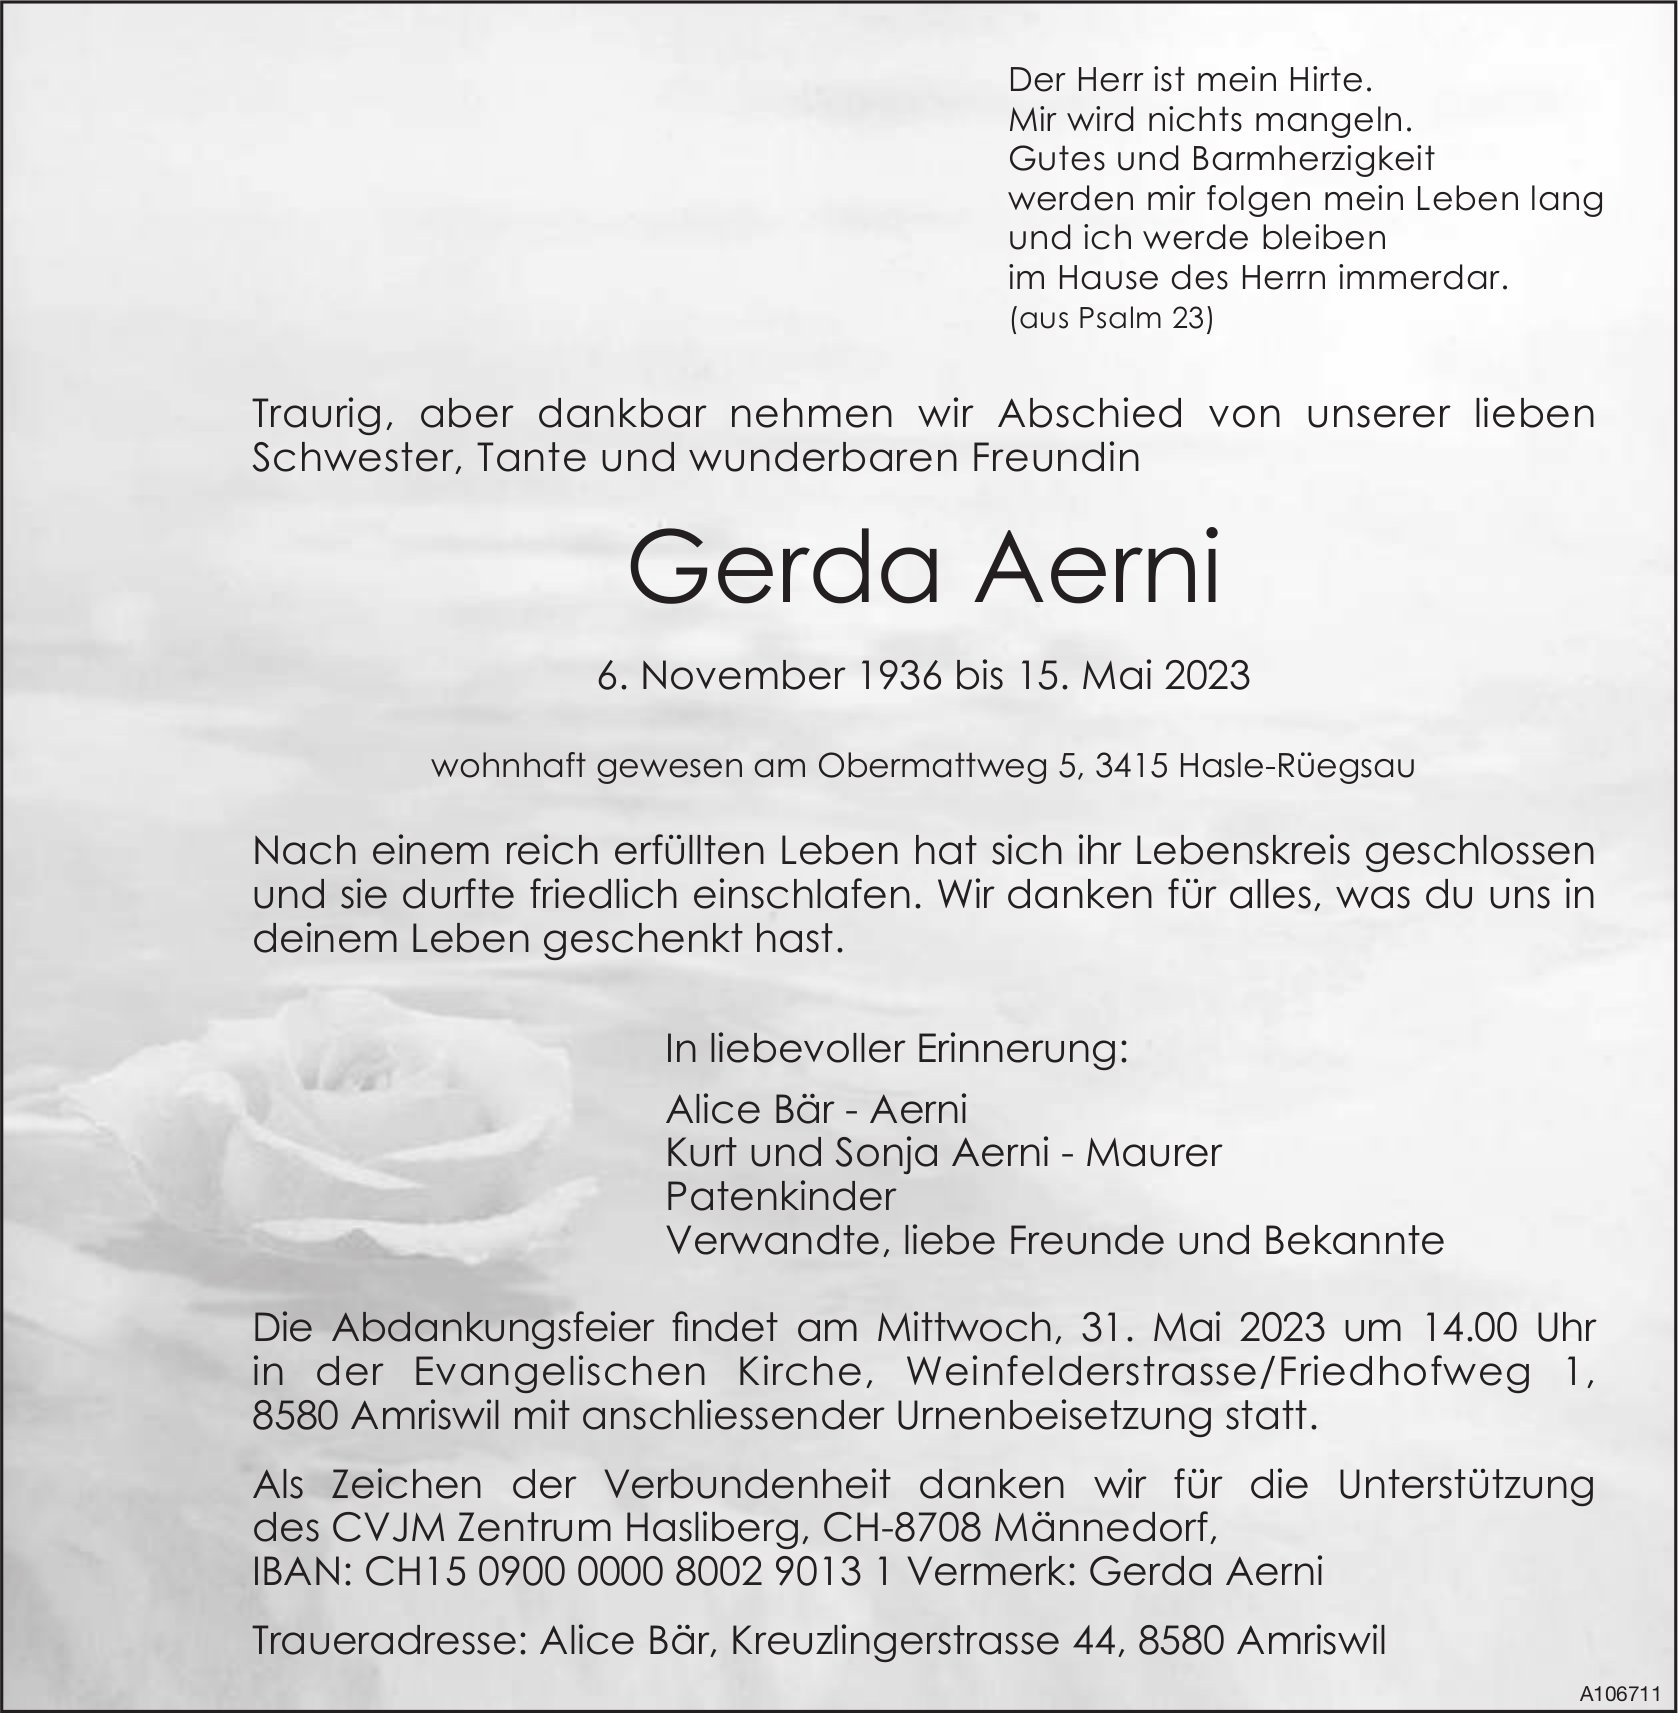 Gerda Aerni, Mai 2023 / TA